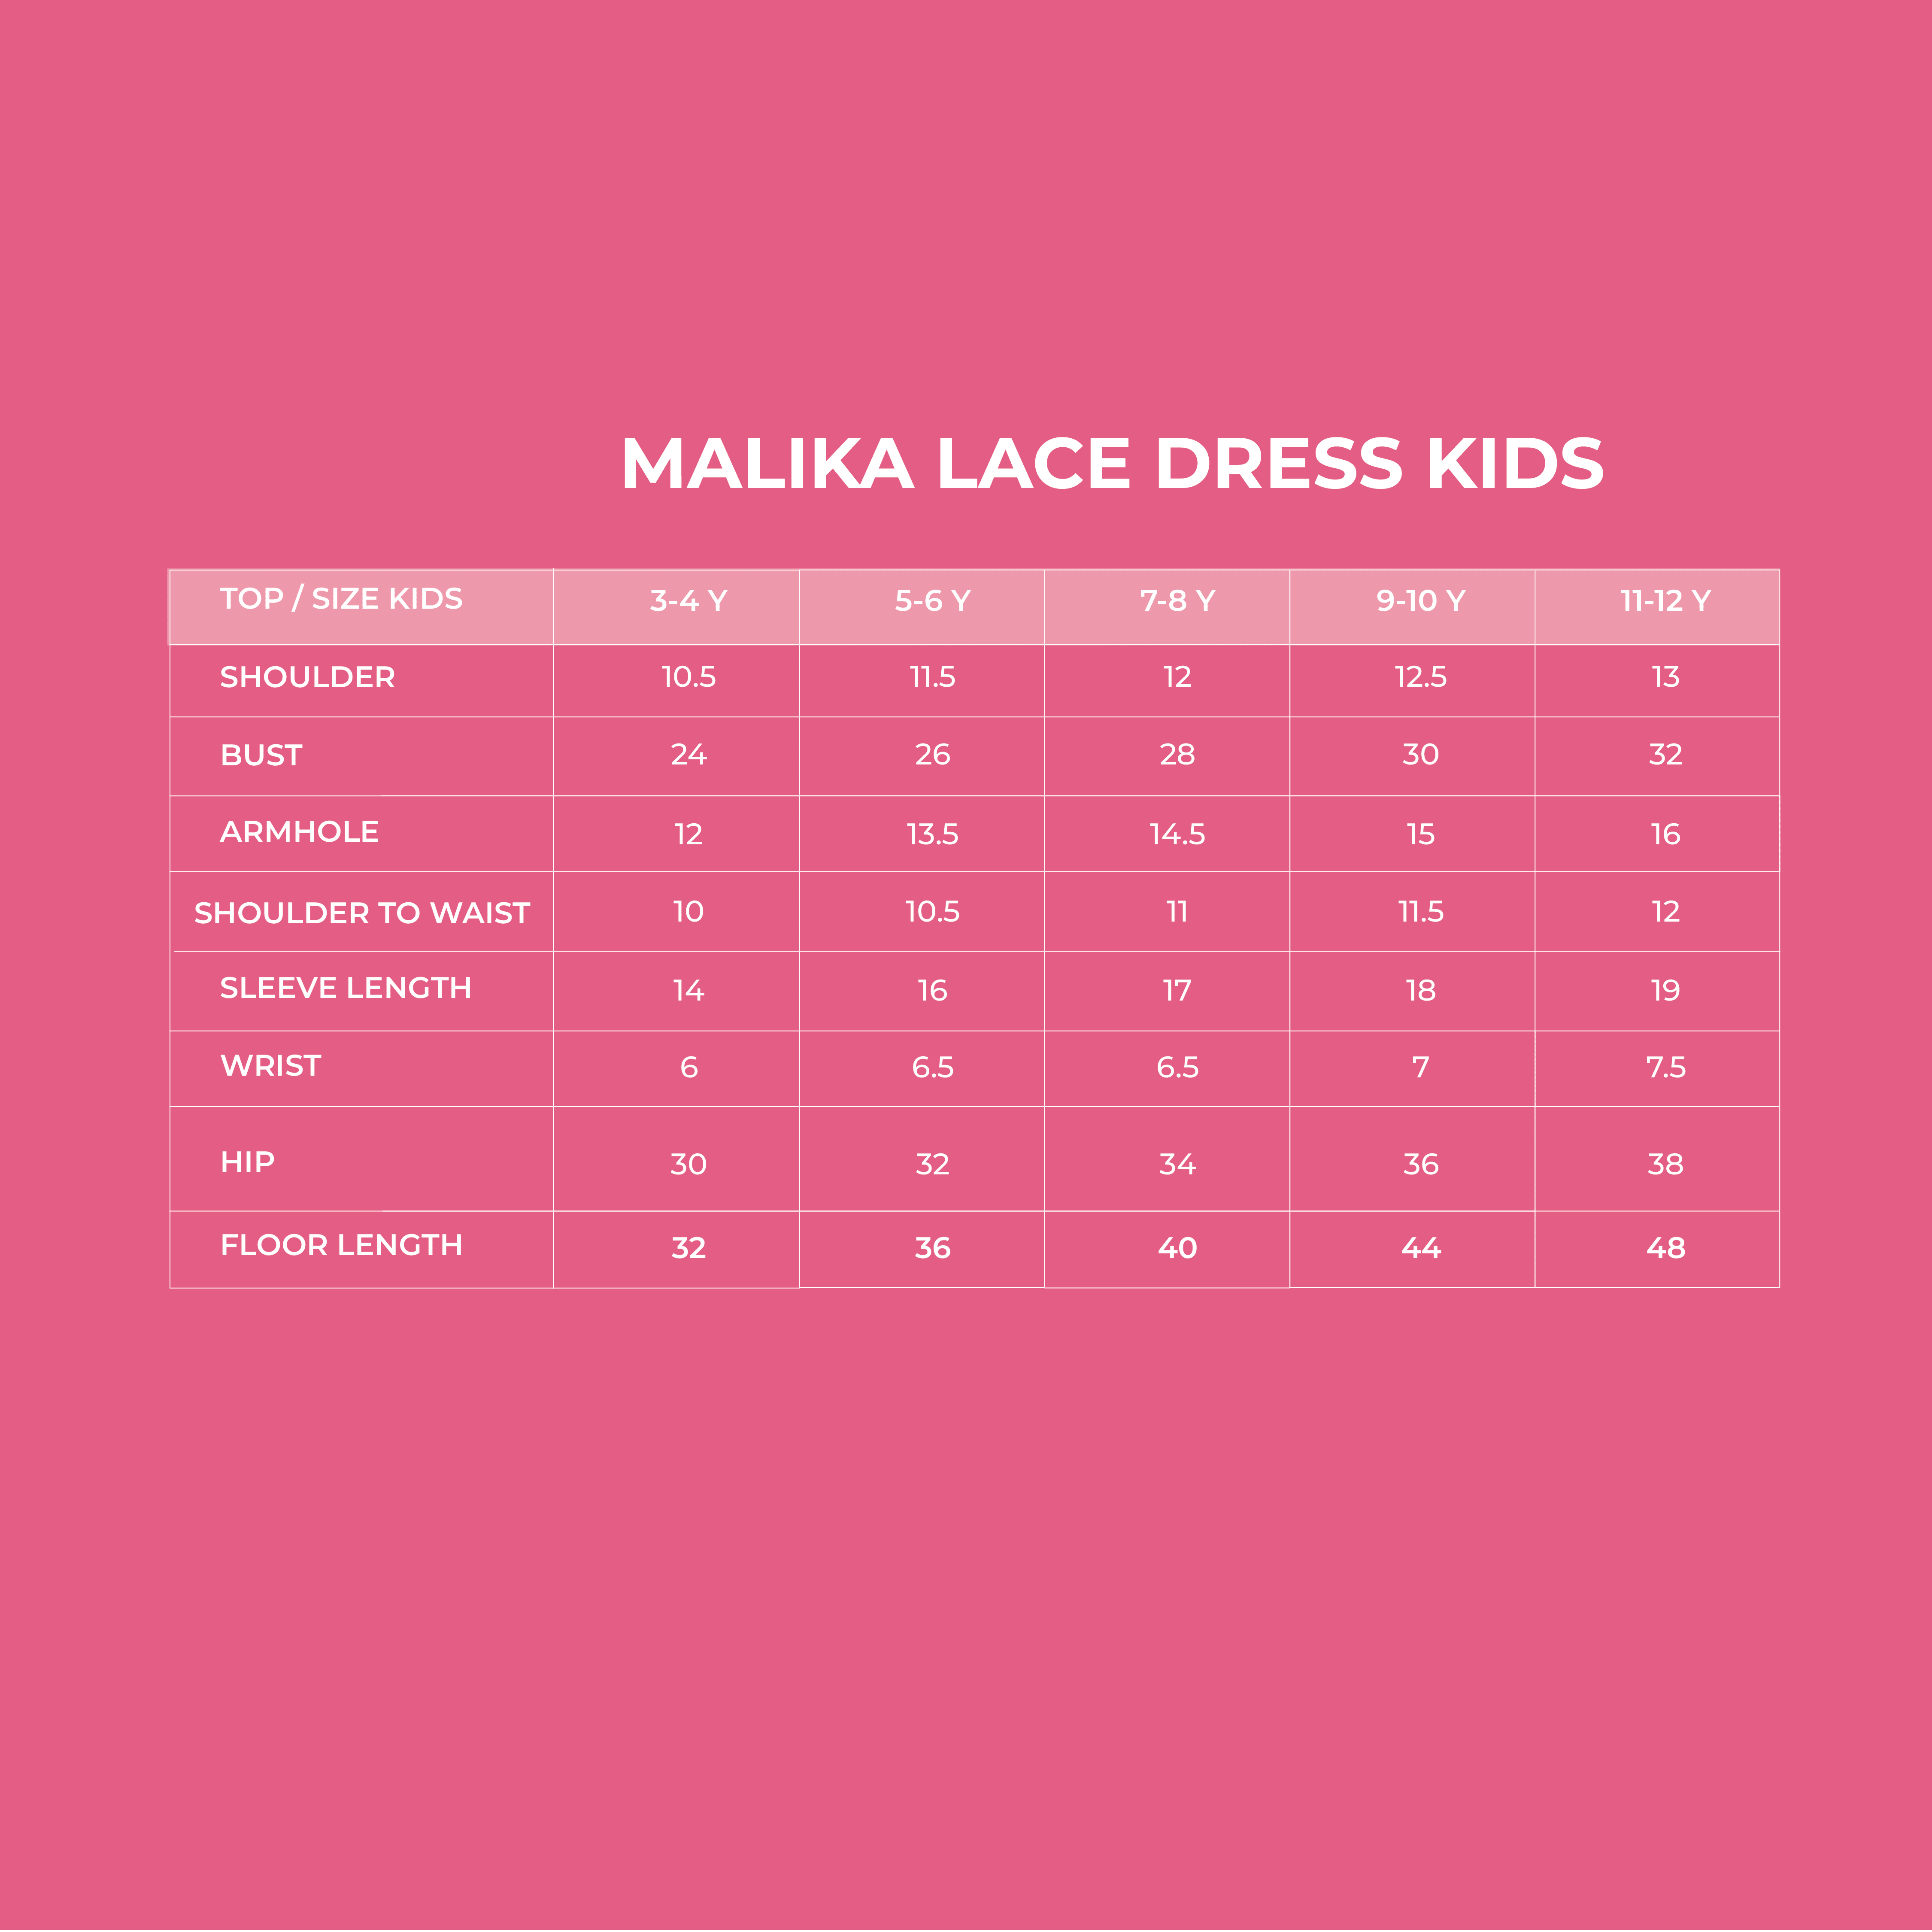 Malika Lace Dress Kids 2.0 Measurement